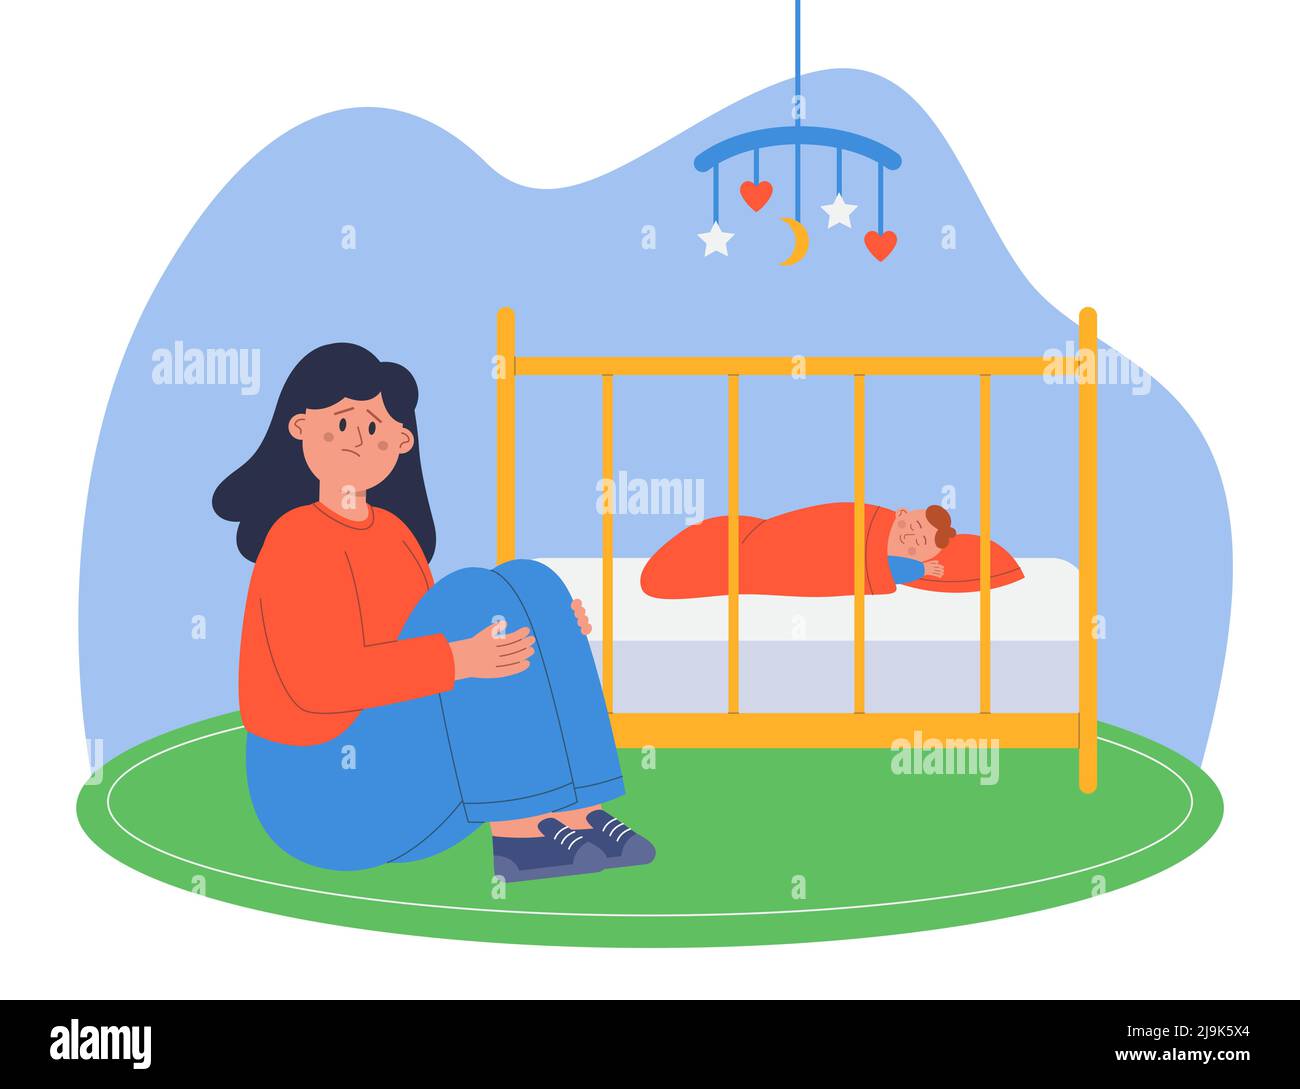 Depressive Mutter sitzt neben der Krippe mit neugeborenem Kind. Traurige und müde Mutter neben schlafenden Baby in Krippe flache Vektor-Illustration. Postnatale Depressi Stock Vektor